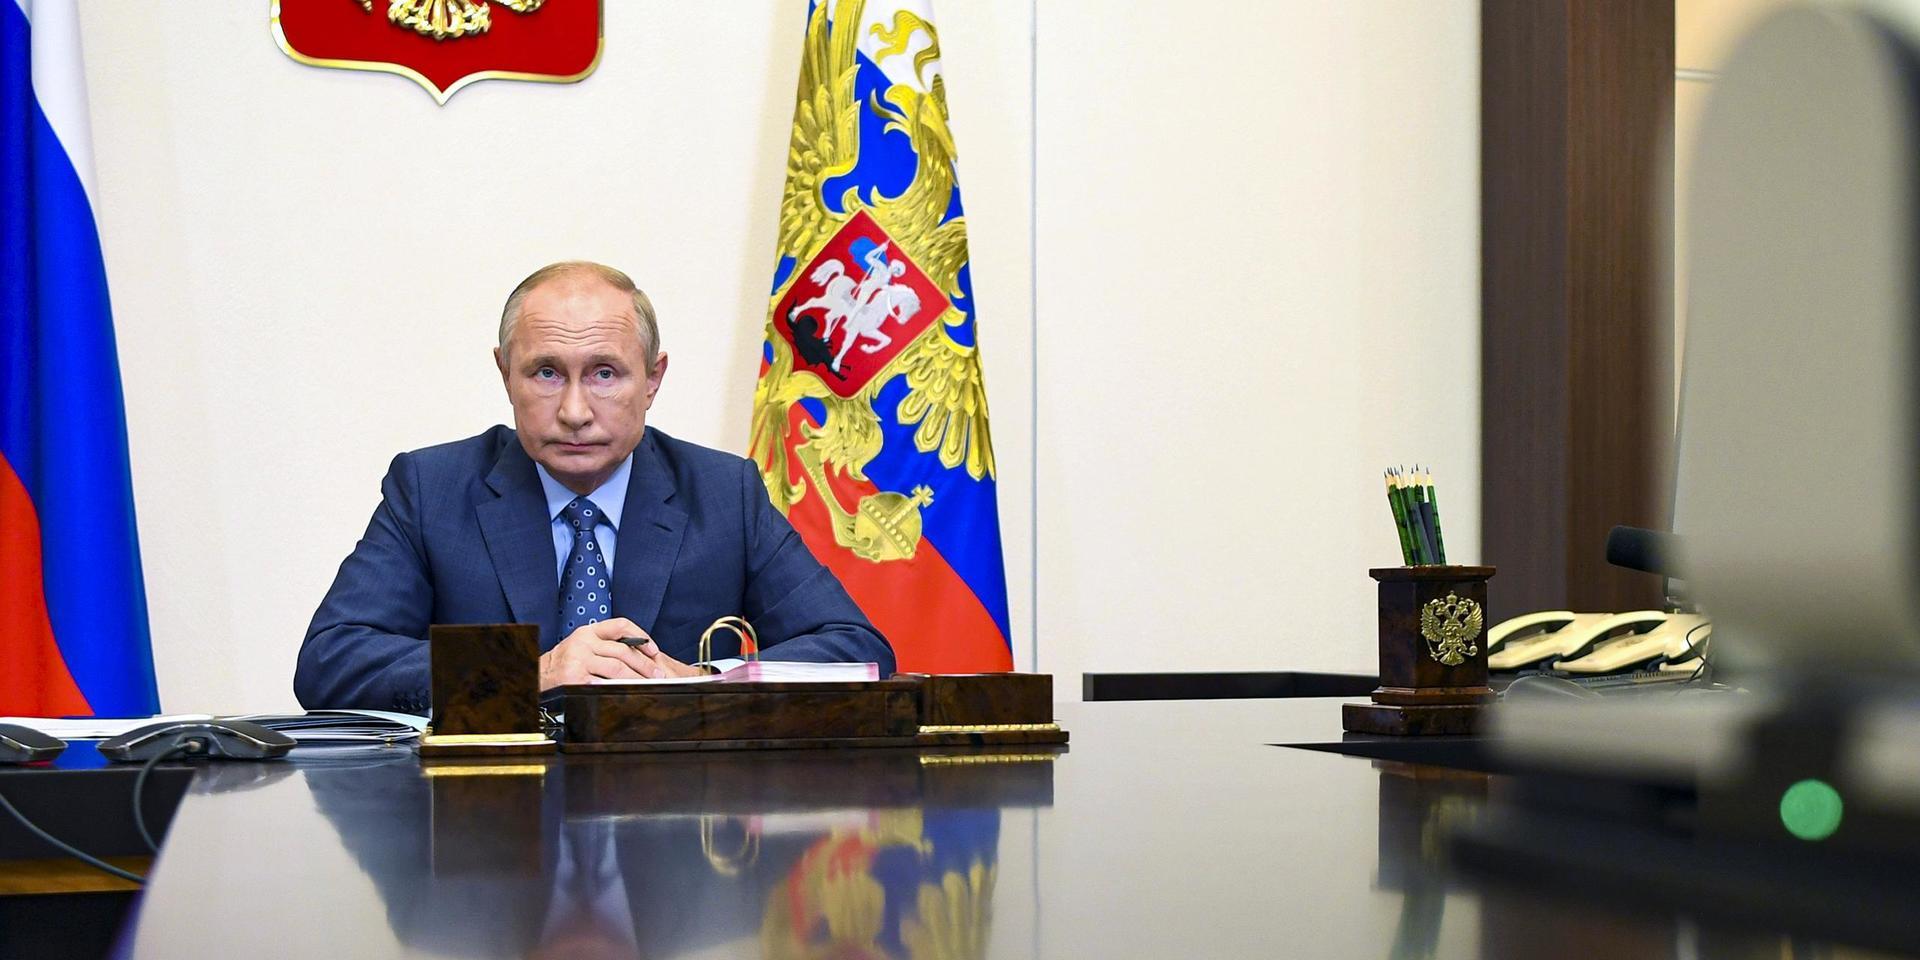 Rysslands president Vladimir Putin har legat lågt med att kommentera det amerikanska valet.